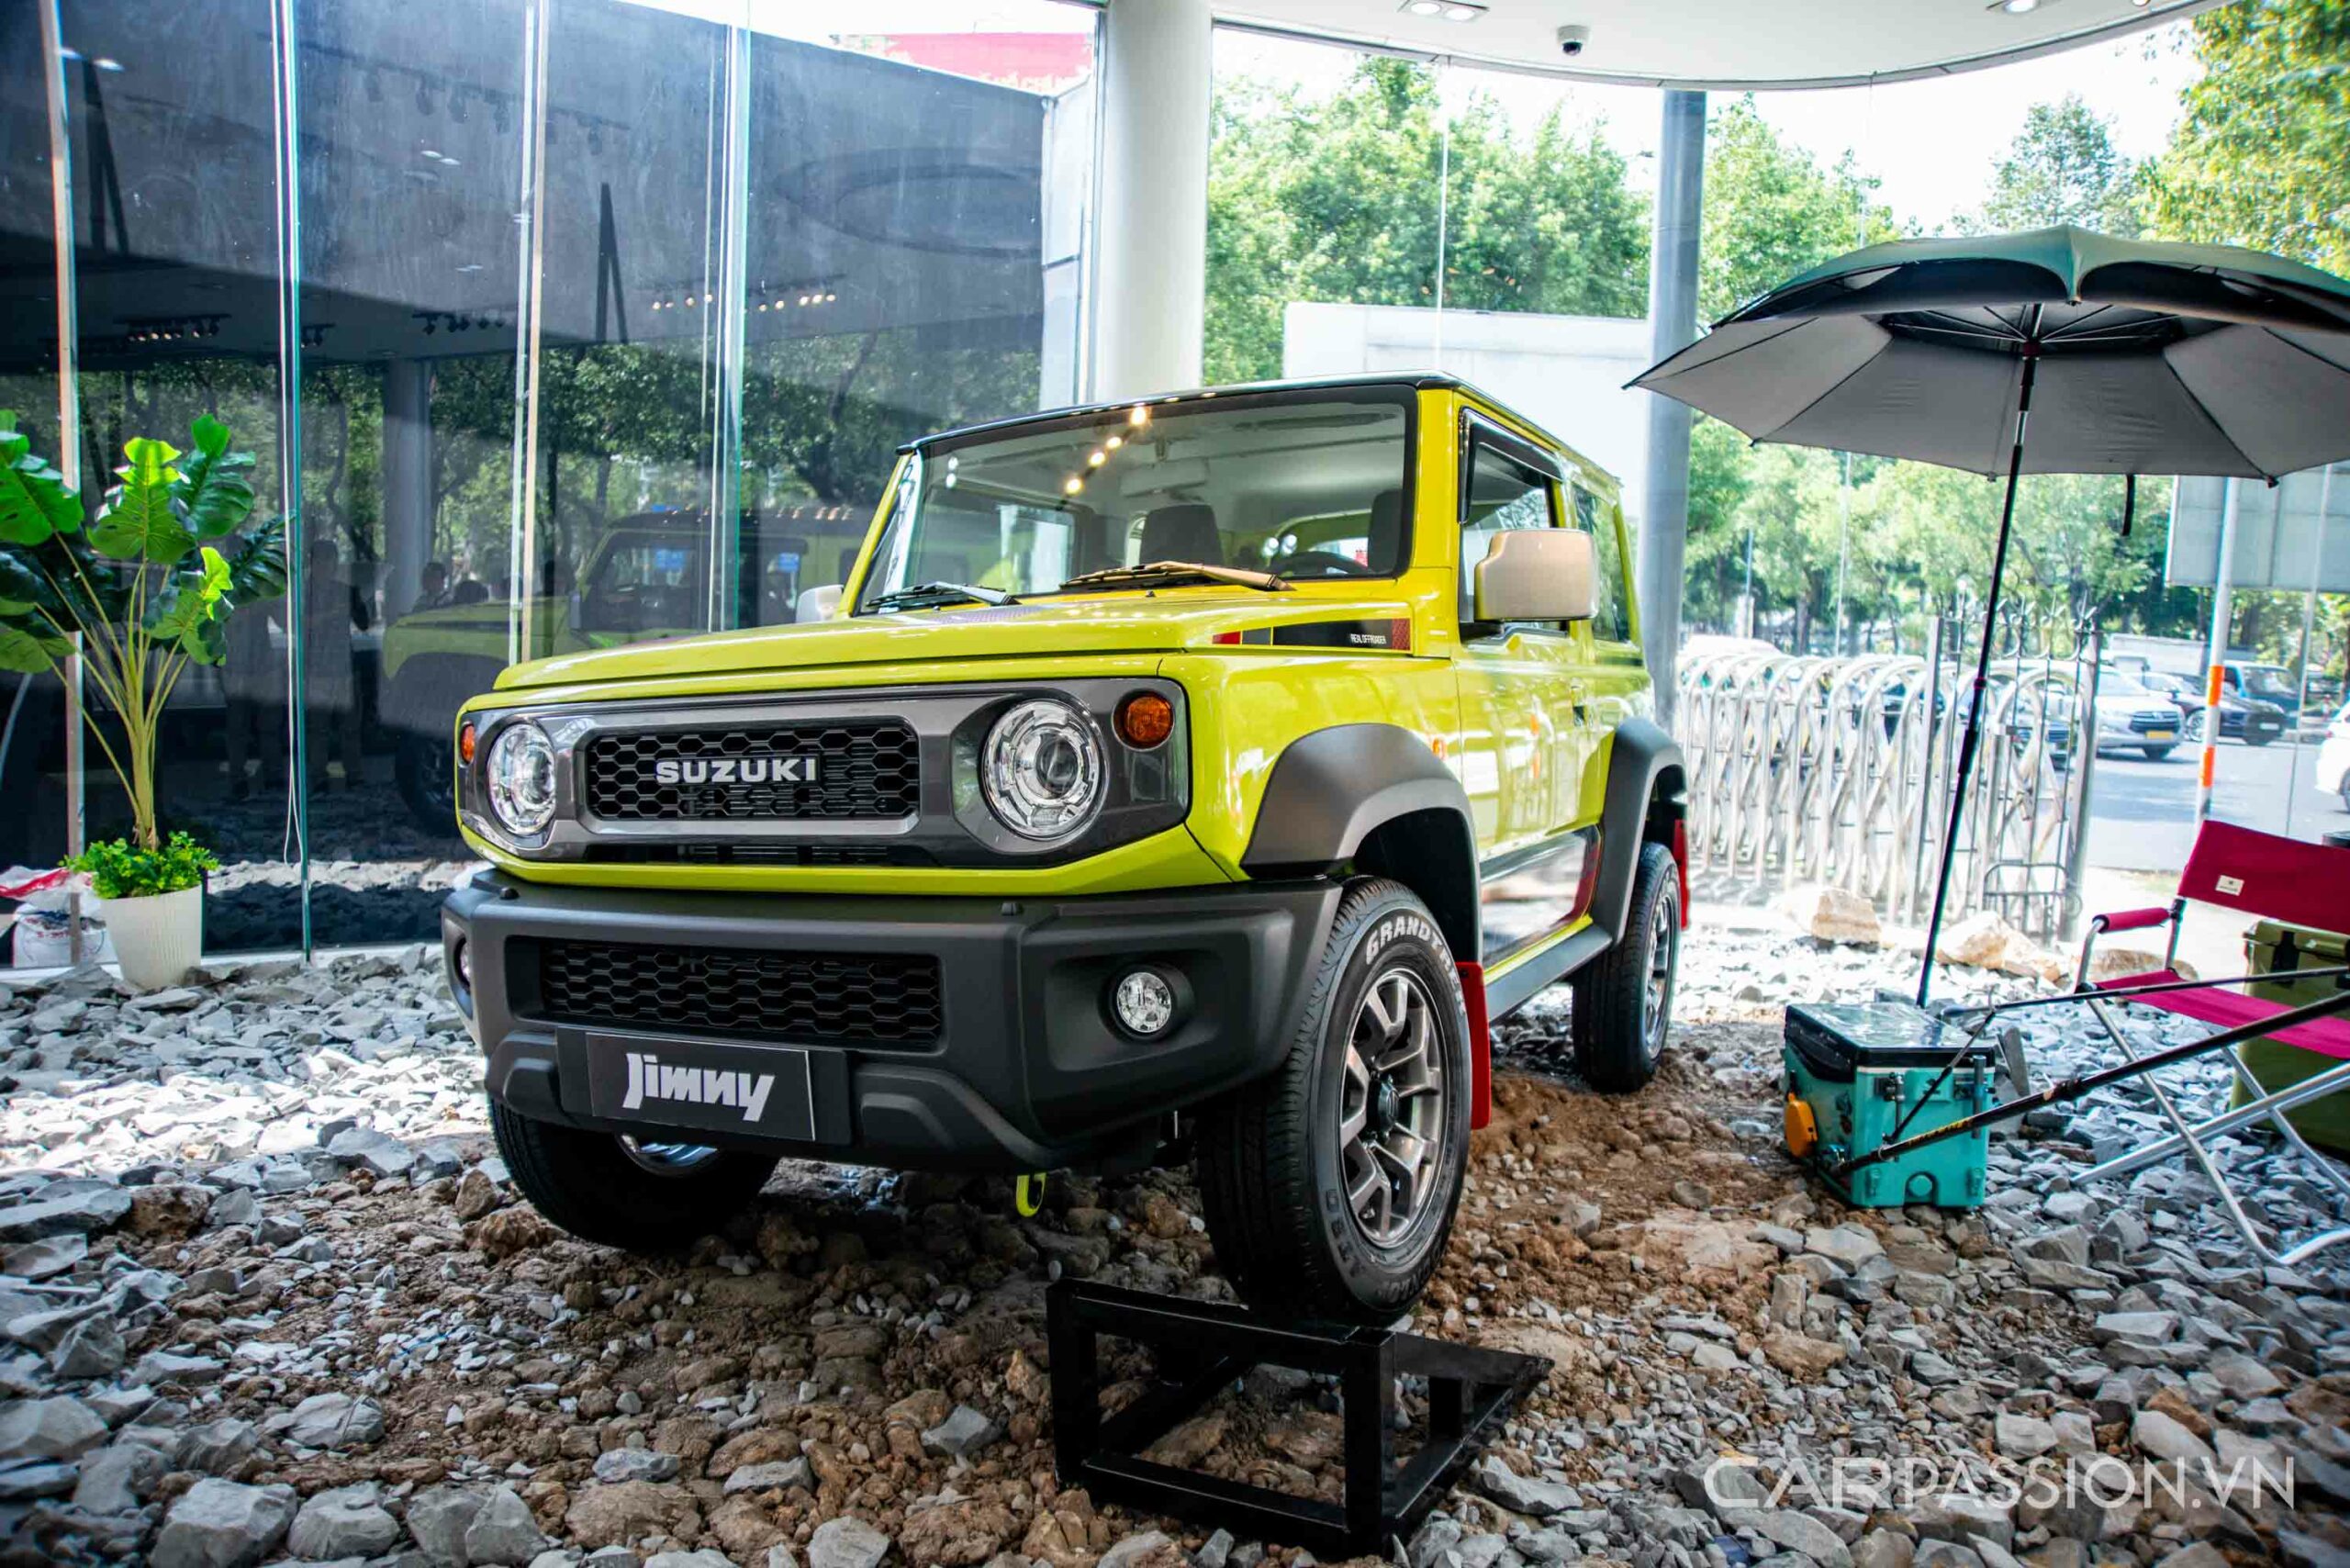 Suzuki Jimny ra mắt 2 phiên bản với các trang bị hỗ trợ off-road, giá từ 789 triệu đồng